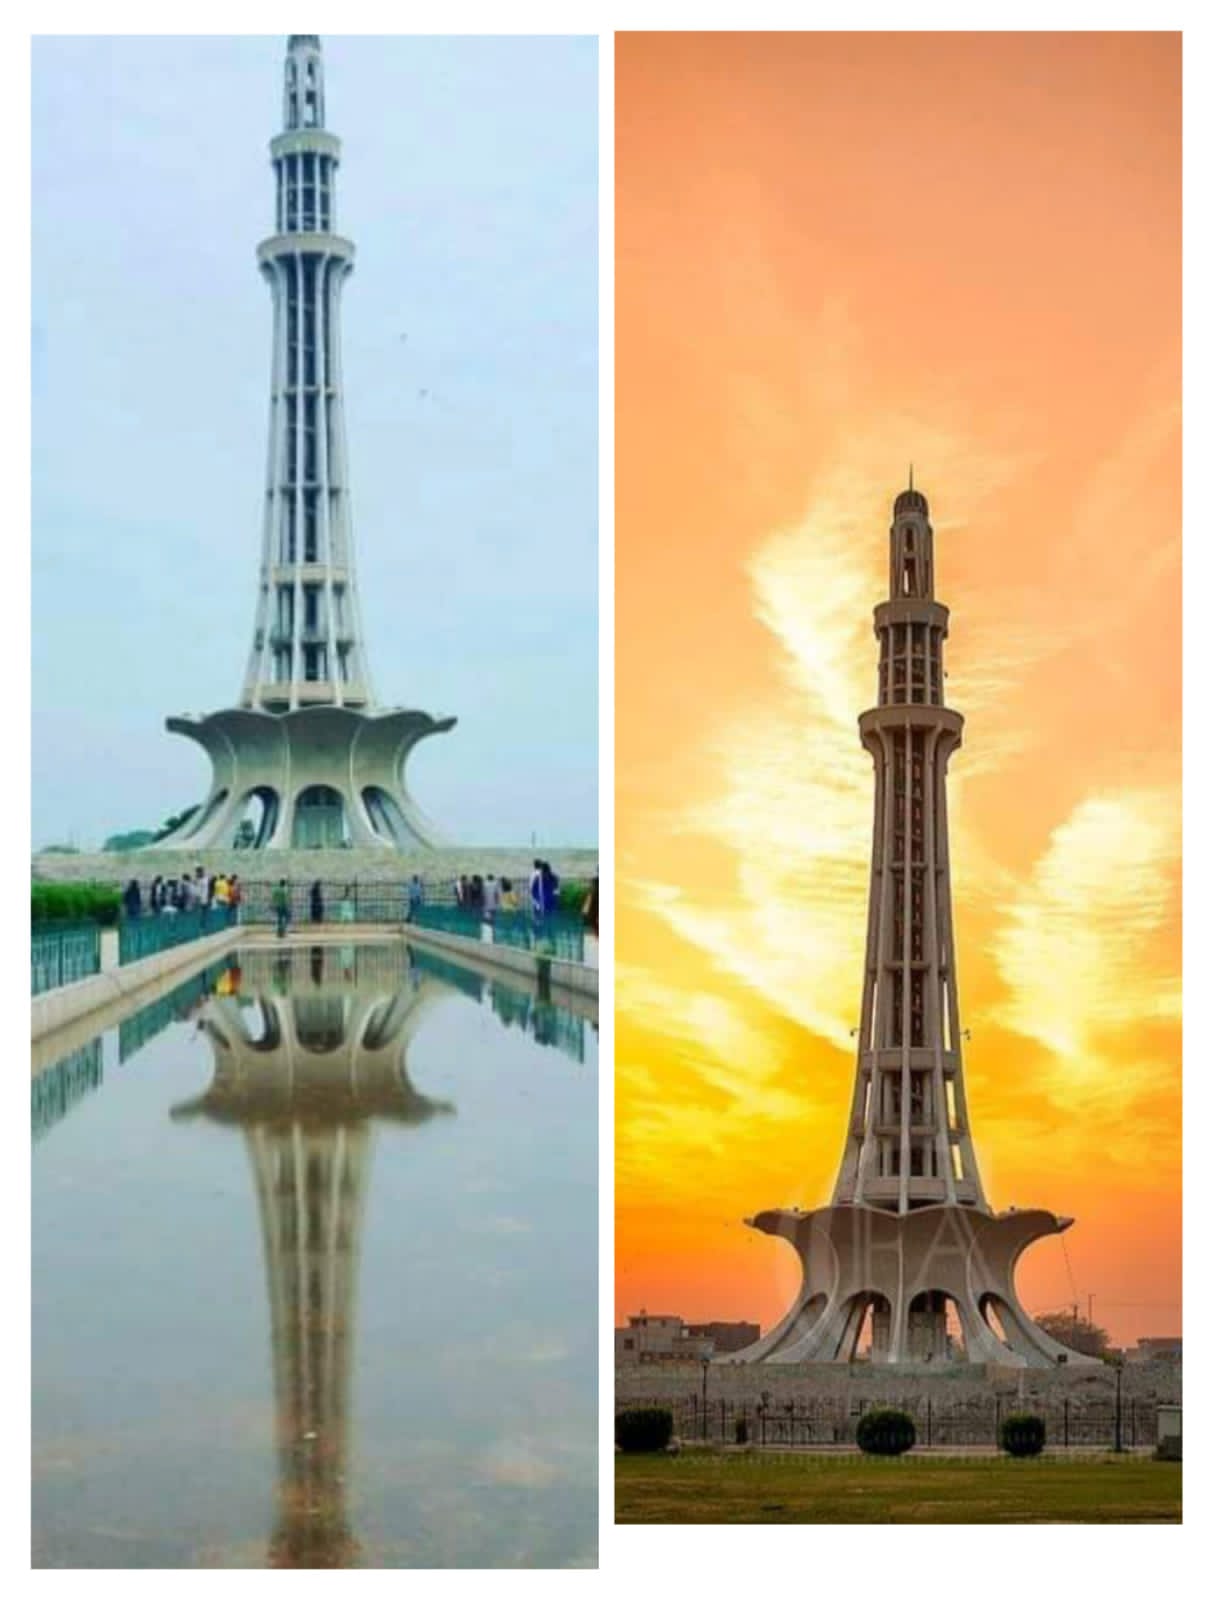 Minar e Pakistan Essay In Urdu | مینار پاکستان پر مضمون 1